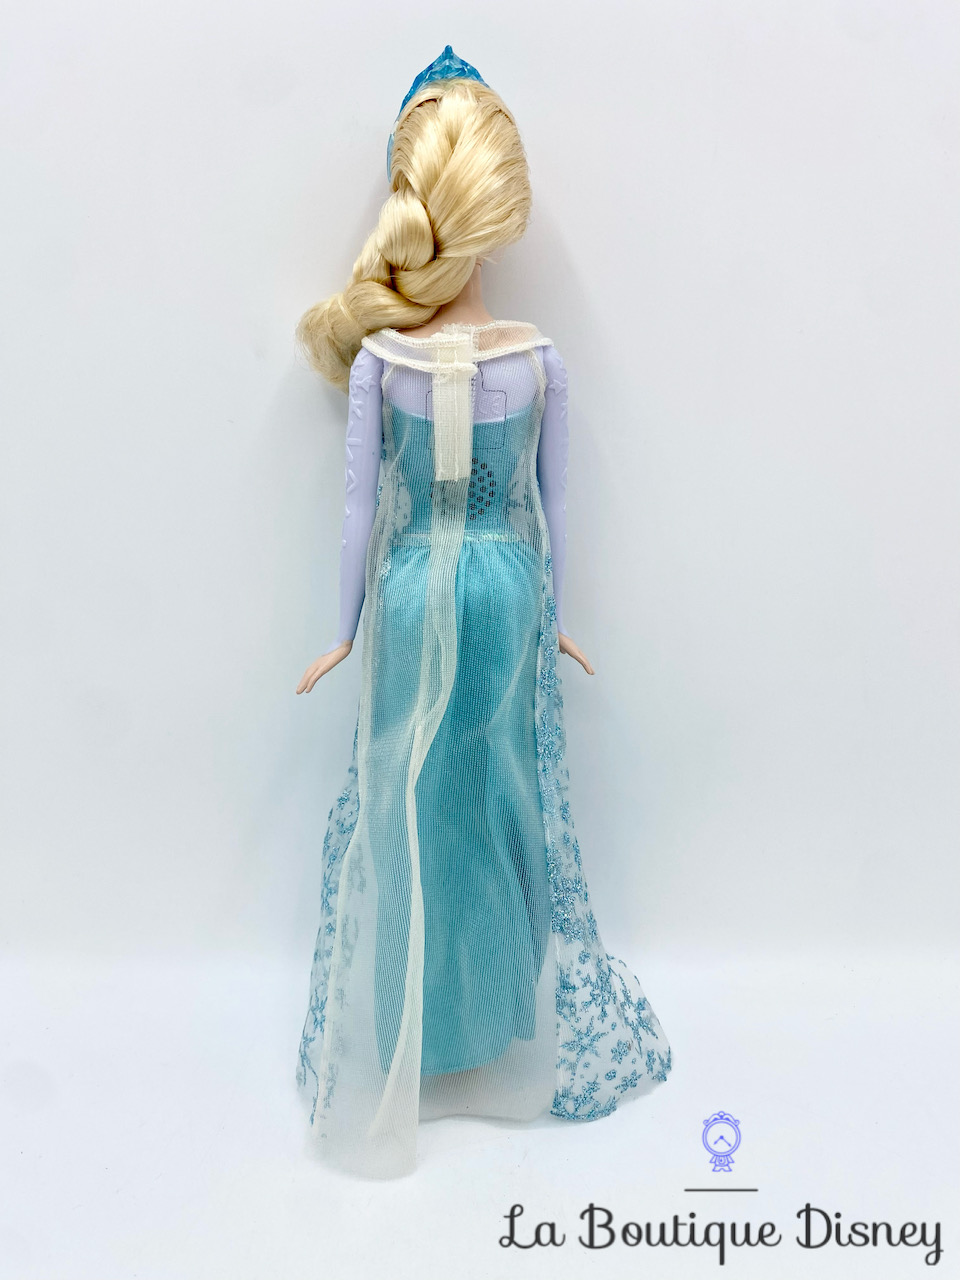 Poupées Elsa chanteuse des neiges Disney Mattel 2014 La reine des